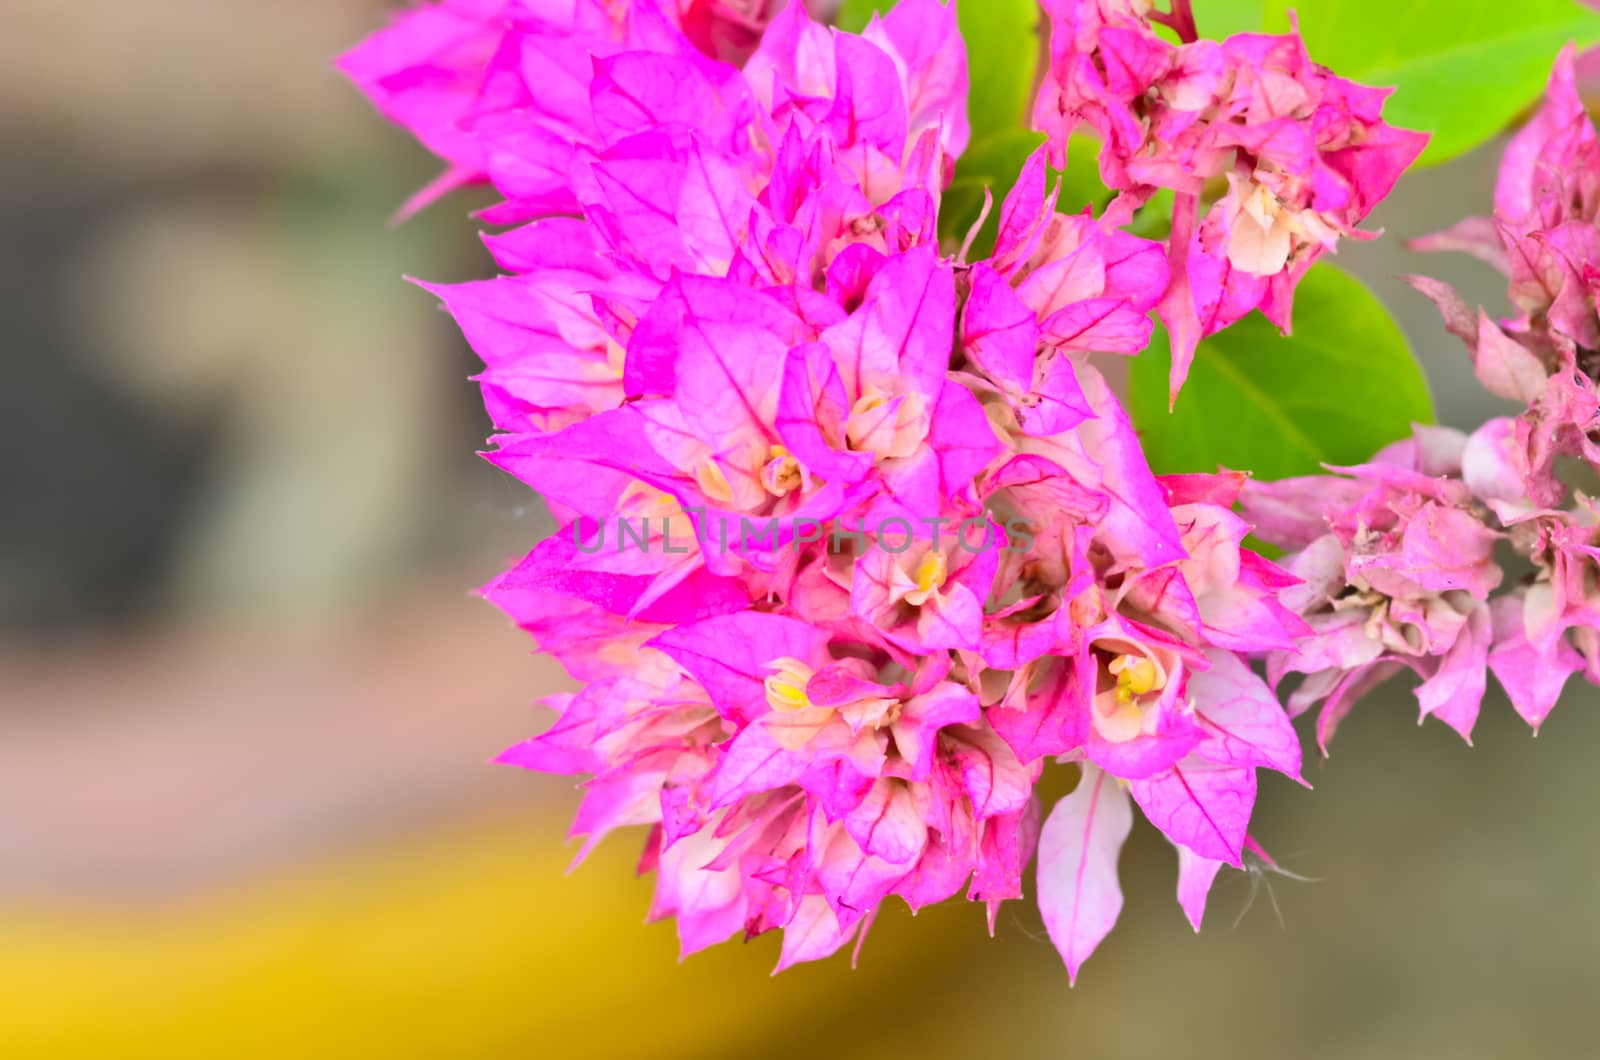 Pink bougainvillea flower